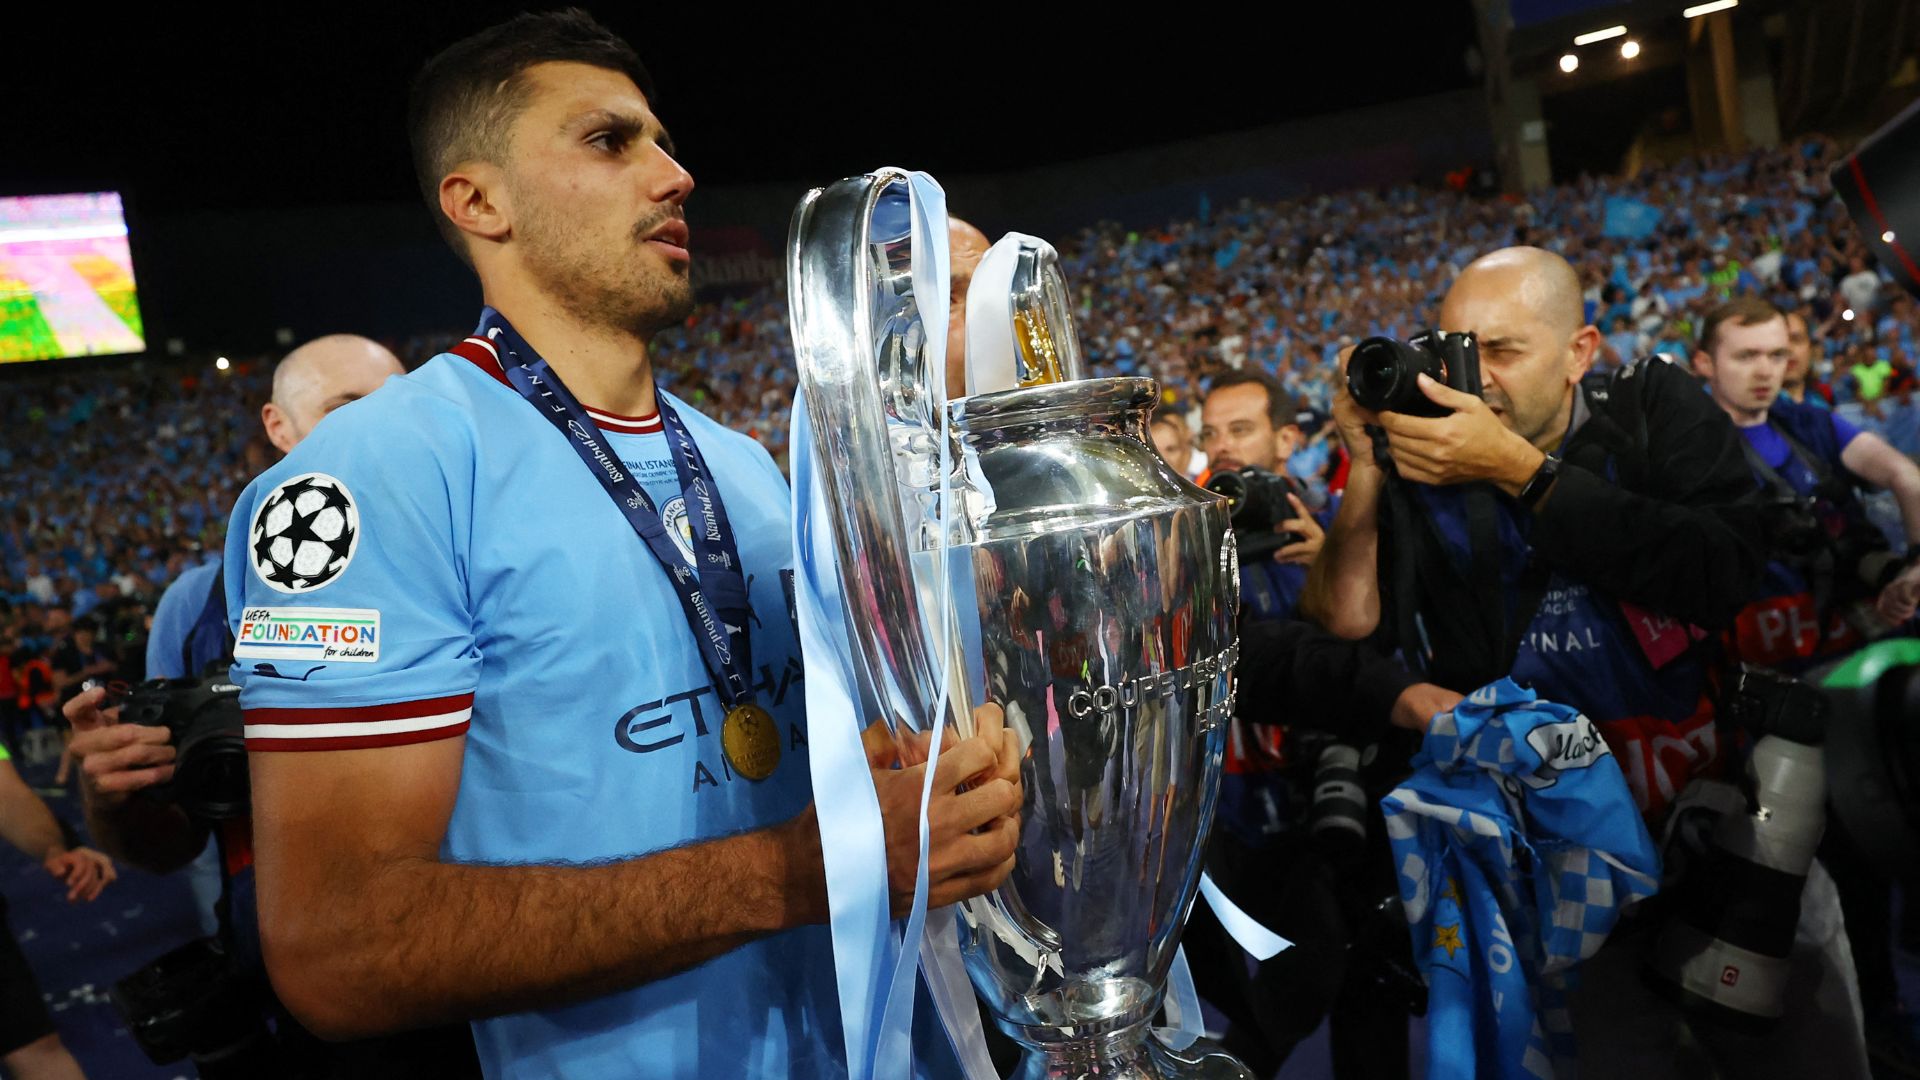 Rodri, do Manchester City, é eleito o melhor jogador da Champions League  2022/23 - Blog Jogano